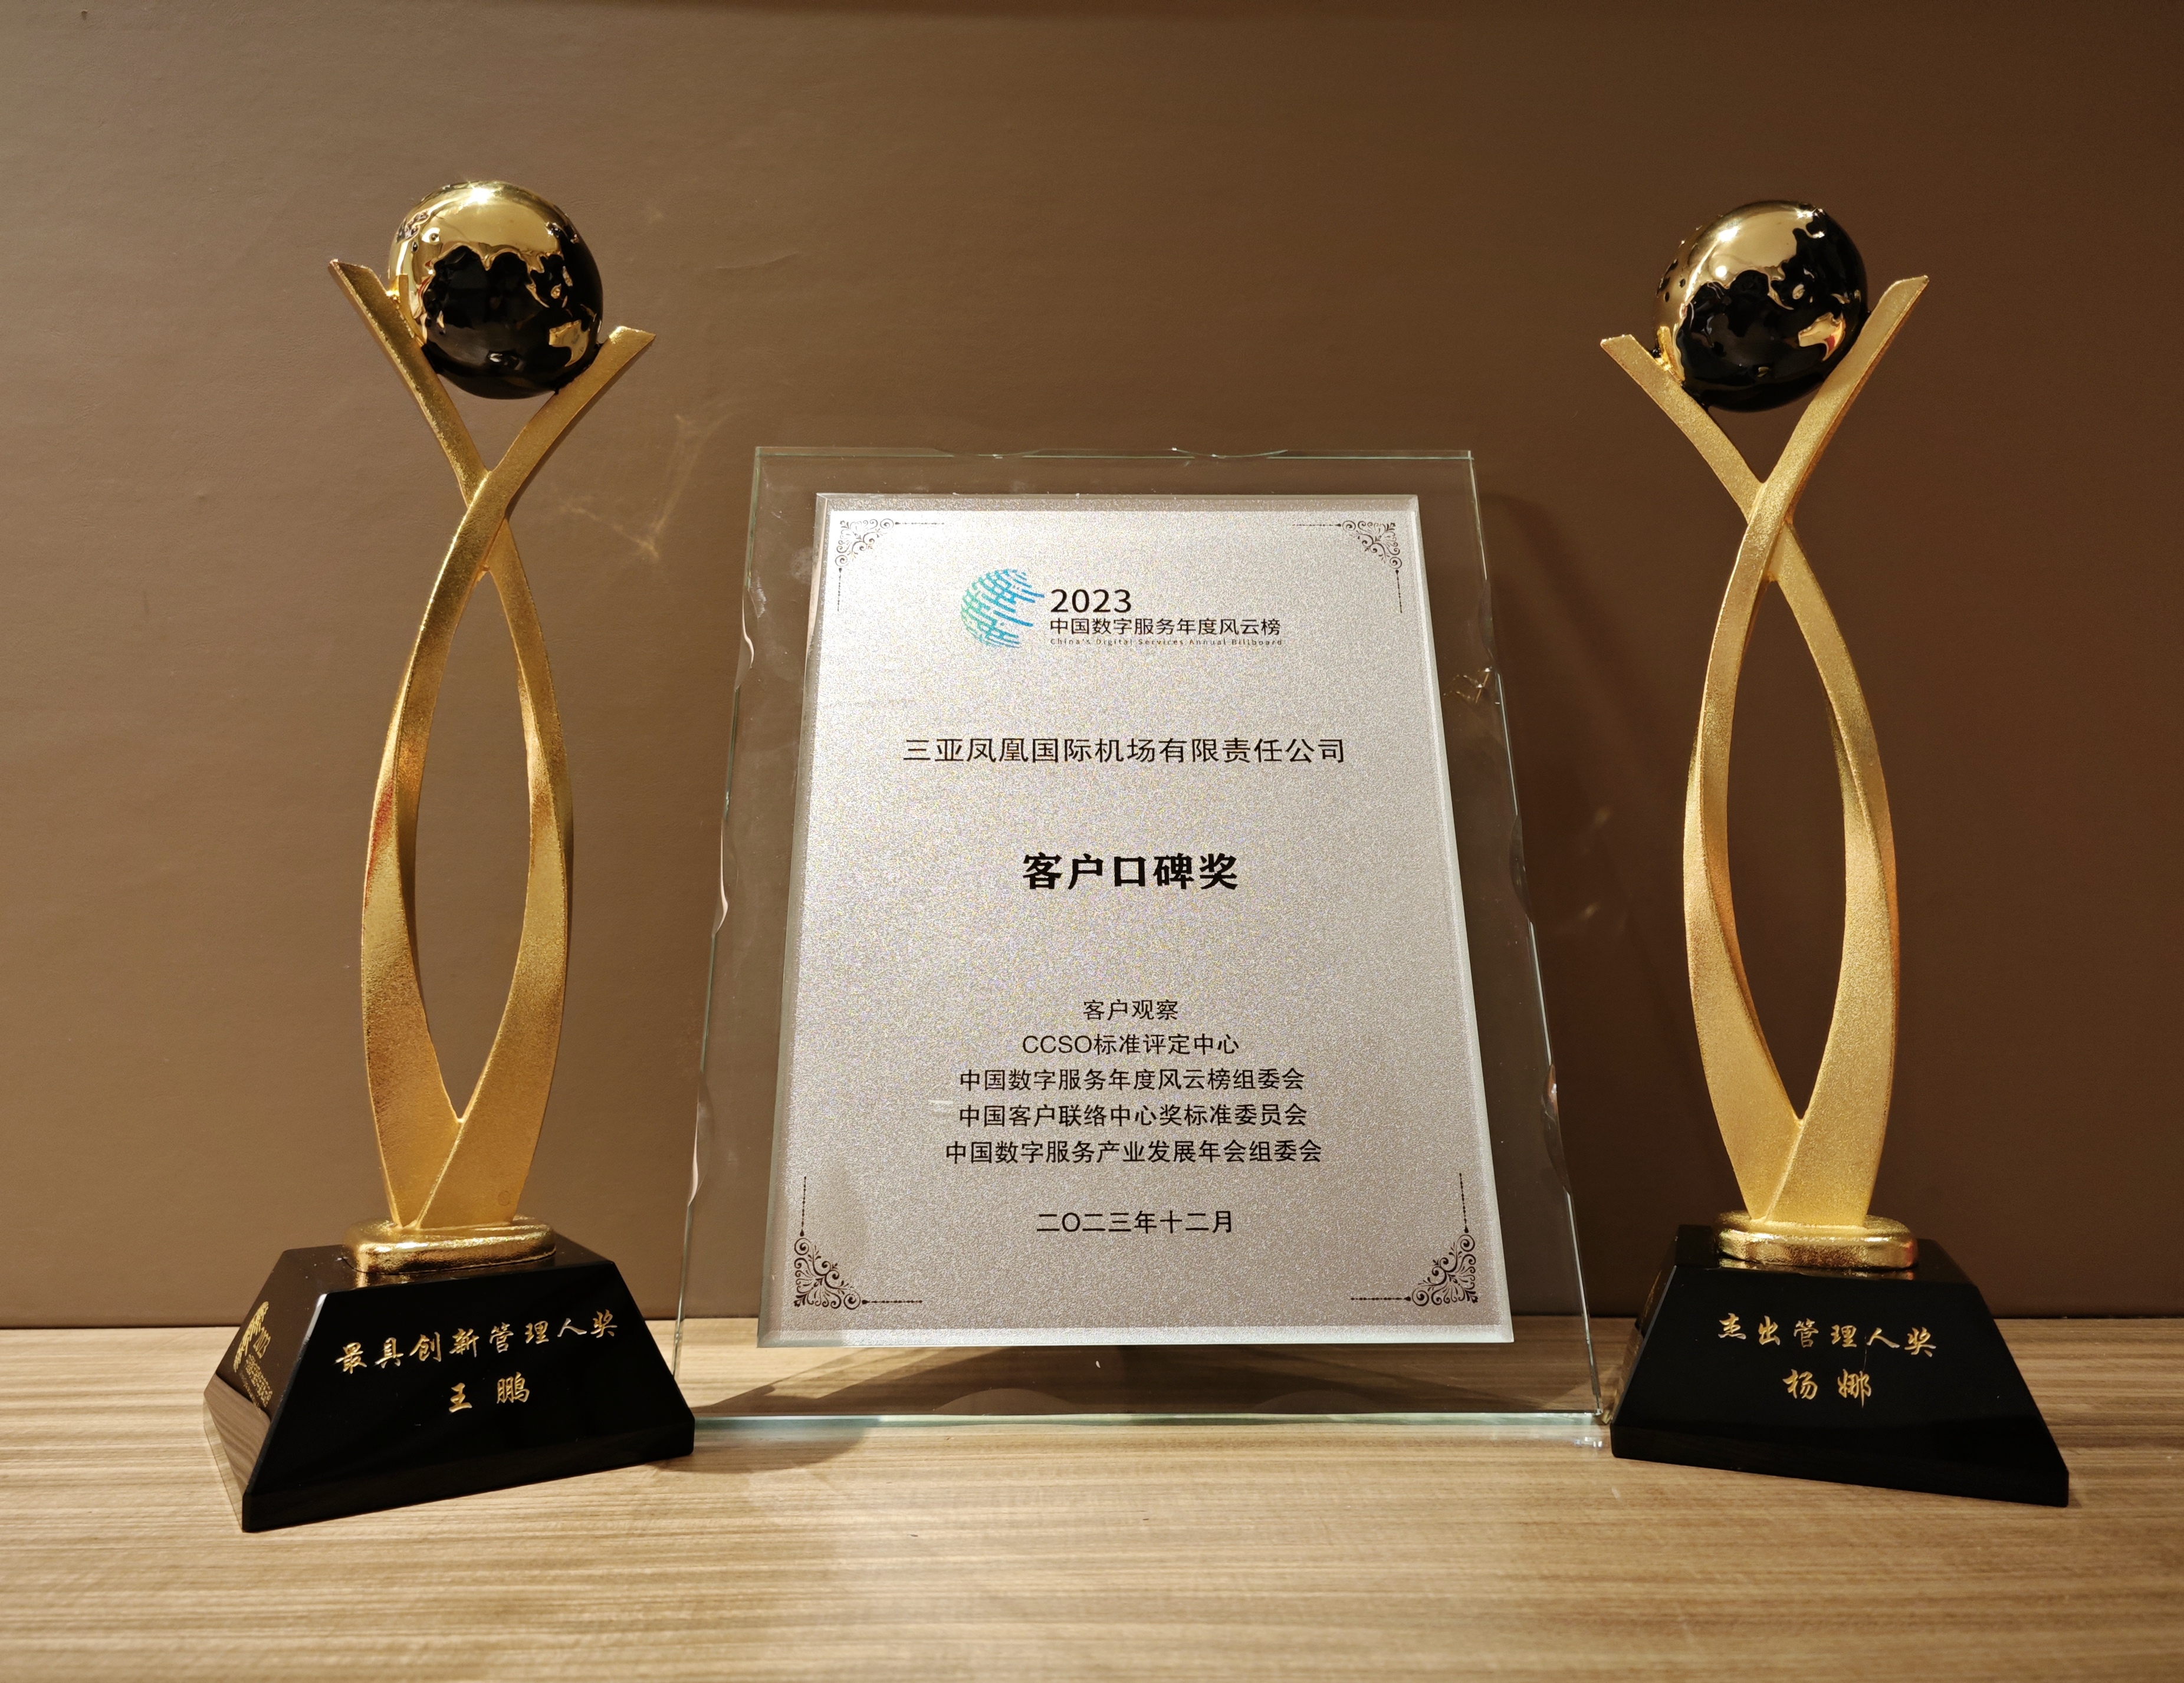 三亚机场客服中心荣获中国数字服务年度风云榜“年度客户口碑奖”等多个荣誉奖项